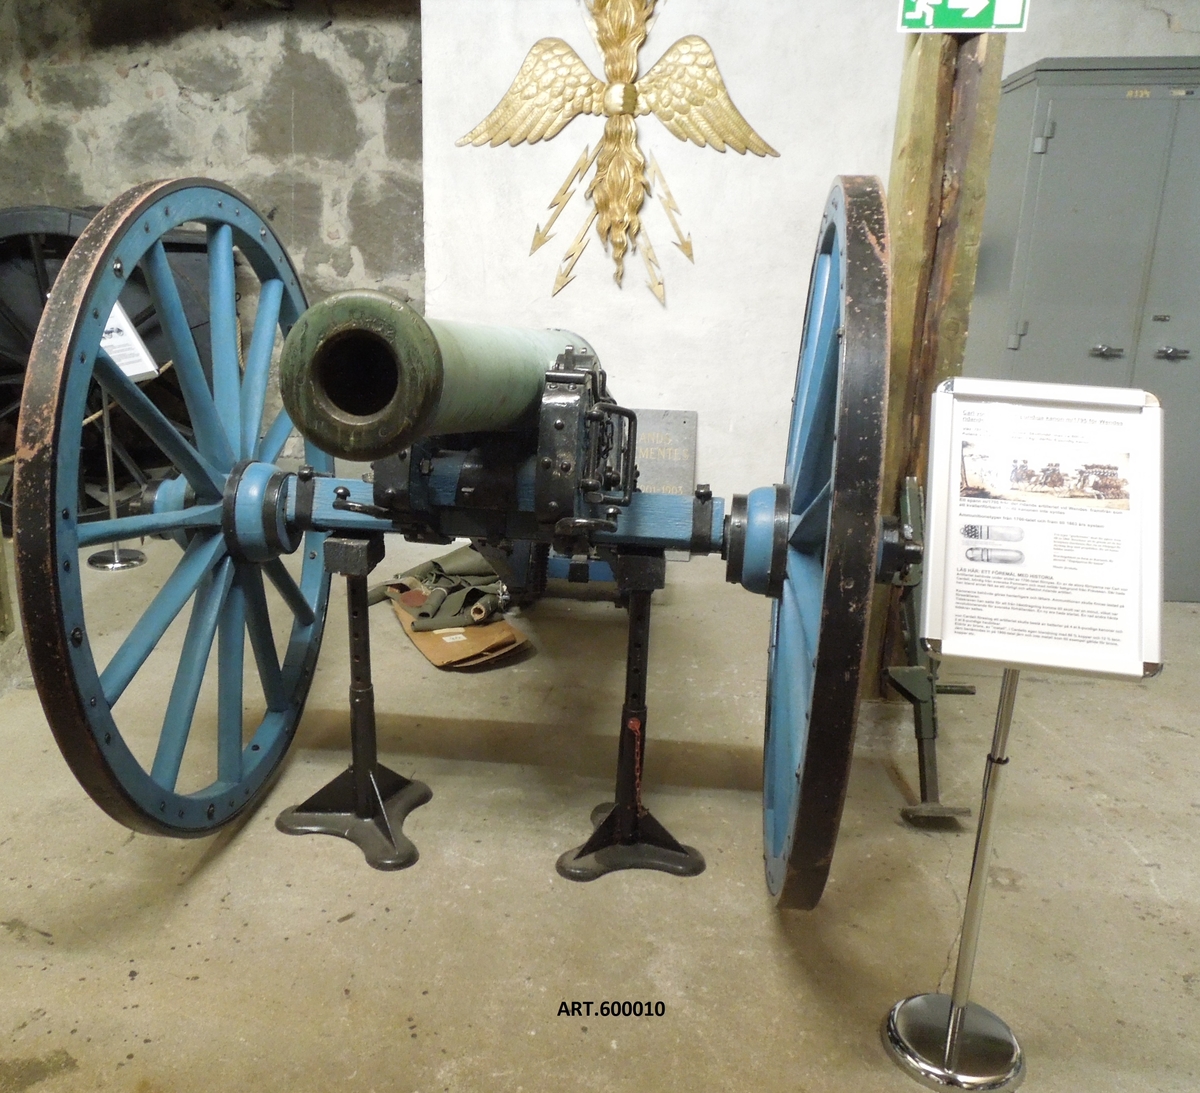 Carl von Cardells 6-pundiga kanon m/1795 för Wendes ridande artilleri
Artilleriet behövde under slutet av 1700-talet förnyas. Organisation och materiel var bristfälliga. En av de stora förnyarna var Carl von Cardell, bördig från svenska Pommern och med militär bakgrund från Preussen. Där hade han bland annat fått se ett rörligt och effektivt ridande artilleri. Även kanonerna behövde förnyas, främst göras hanterligare och lättare. Ammunitionen skulle finnas på föreställaren. 
Tidskraven han satte för att från hästdragning komma till skott var en minut vilket var revolutionerande för svenska förhållande. En ny era hade startat. En rad andra hårda tidskrav sattes.

von Cardell övergick 1791 i svensk tjänst och började genast komma med förnyelseförslag. Han stod väl i gunst hos den unge nye kungen Gustaf IV Adolf. Han föreslog att artilleriet skulle bestå av batterier på 4 6-pundiga kanoner och 2 8-pundiga haubitsar. 
Han presenterade pjäsförslag 1792 men fick först 1795 möjlighet att gjuta sina egna modeller. En kanon av dessa finns i Artillerimuseet. Två finns i Göteborg, komna från Kristianstad. De har sedan 1820 funnits i Göteborg, under många år som larmkanoner på Gustav Adolfs torg.

Troligen tillverkades 10 stycken varav hälften förlorades i kriget 1806.
Några data:
Vikt: 755 kg
Eldrör av brons, av ”metall”, i en egen Cardellsblandning med 88 % koppar och 12 % tenn.  (Järn benämndes järn och inte metall på den tiden.)
Kulans vikt: 6 pund, knappt 3 kg, därav  ”6-pundig kanon”.
Skottvidd max ca 600 meter
---
von Cardell blev regementschef för Wendes och slutade som generalfälttygmästare.
Tre andra Cardellspjäser finns i Artillerimuseet, en 8-pundig haubits som, tillsammans med fyra kanoner i två ex normalt ingick i ett ridande batteri. Dessutom finns 12-pundig kanon och ett 16-pundigt haubitseldrör för ett tungt ridande batteri som sattes upp på försök.

Efter von Cardell övergick all tillverkning av eldrör till styckebruken, det vill säga gjorda av det billigare gjutjärnet.